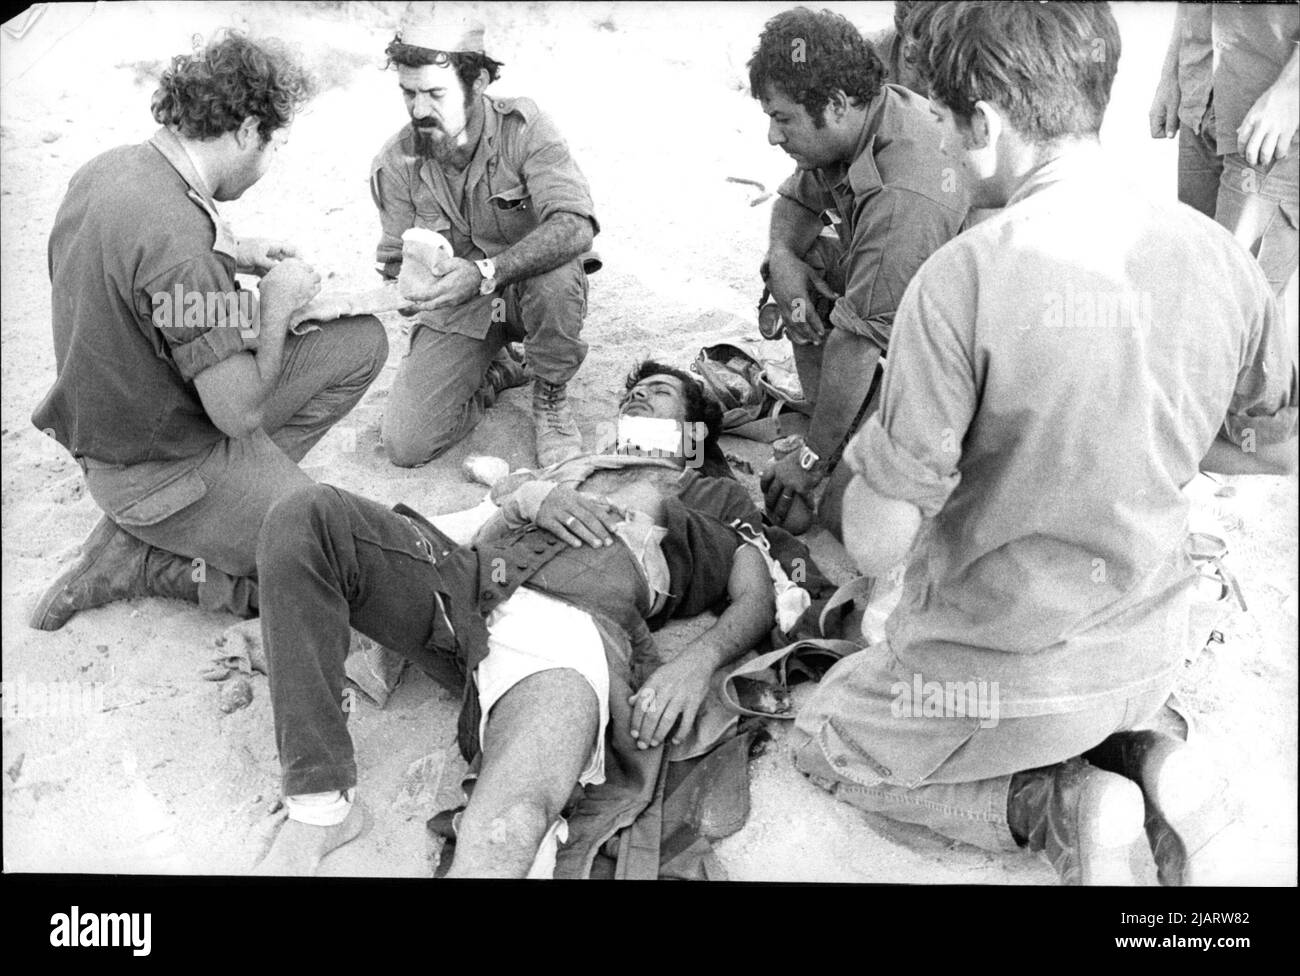 Beim Absturz seiner Maschine zog sich dieser syrische Pilot Knochenbrüche an Armen und Beinen zu. Das Bild zeigt Sanitäter der israelischen Armee bei der ersten Hilfe. Stock Photo